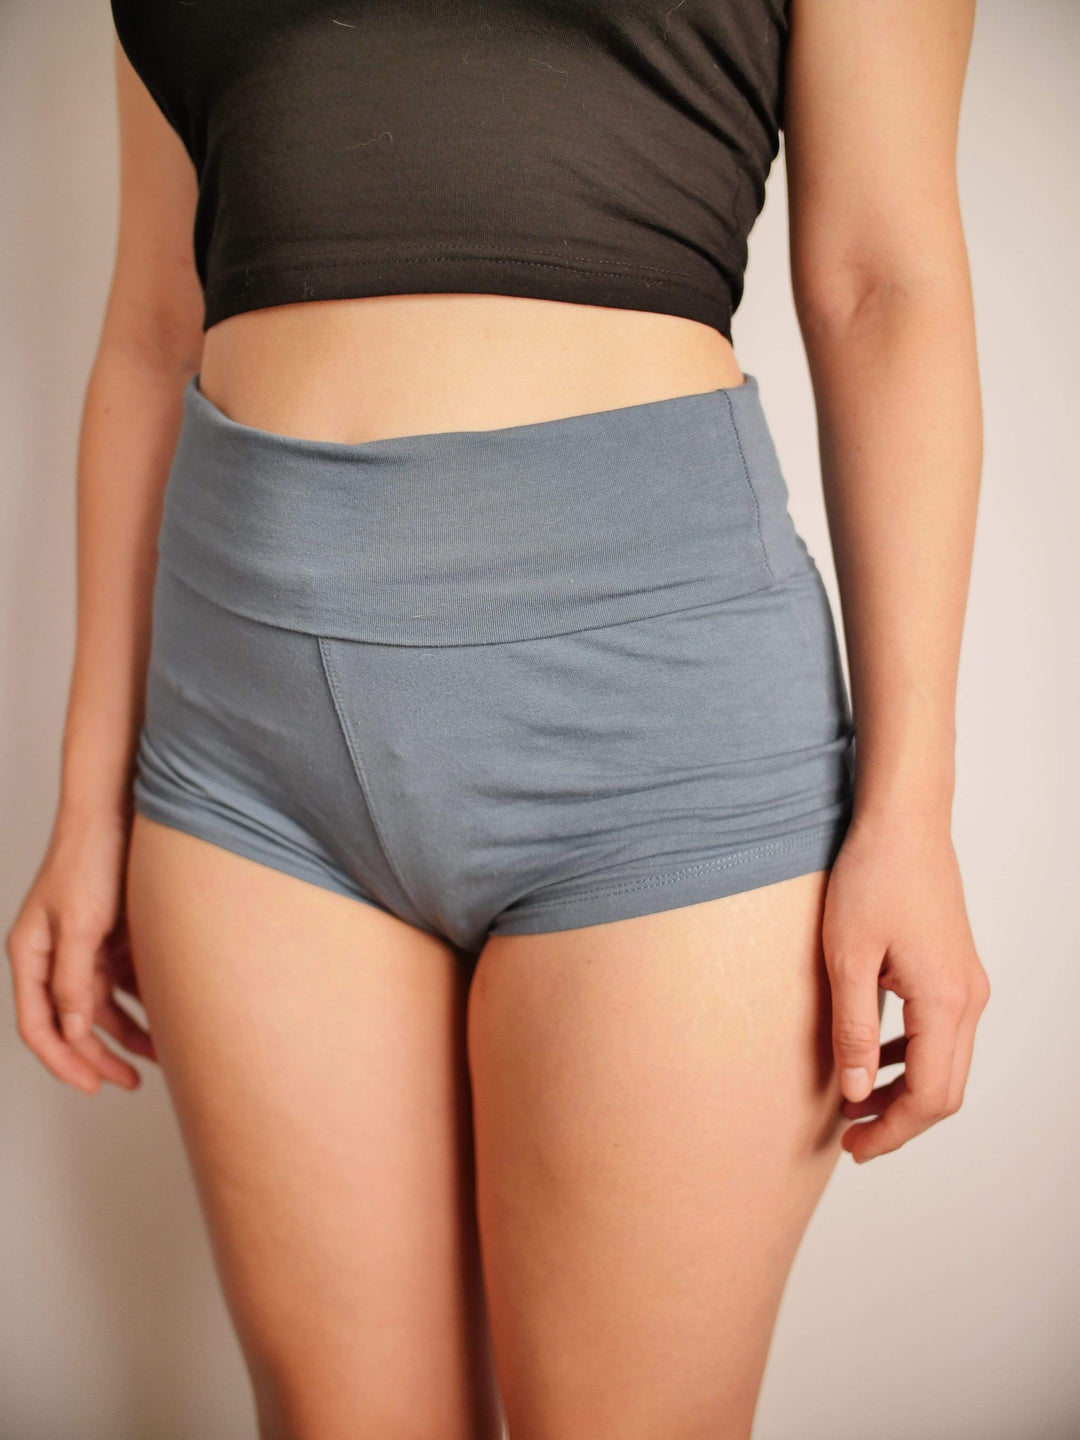 PixelThat Punderwear Yoga Shorts Not Your Waifu Yoga Shorts